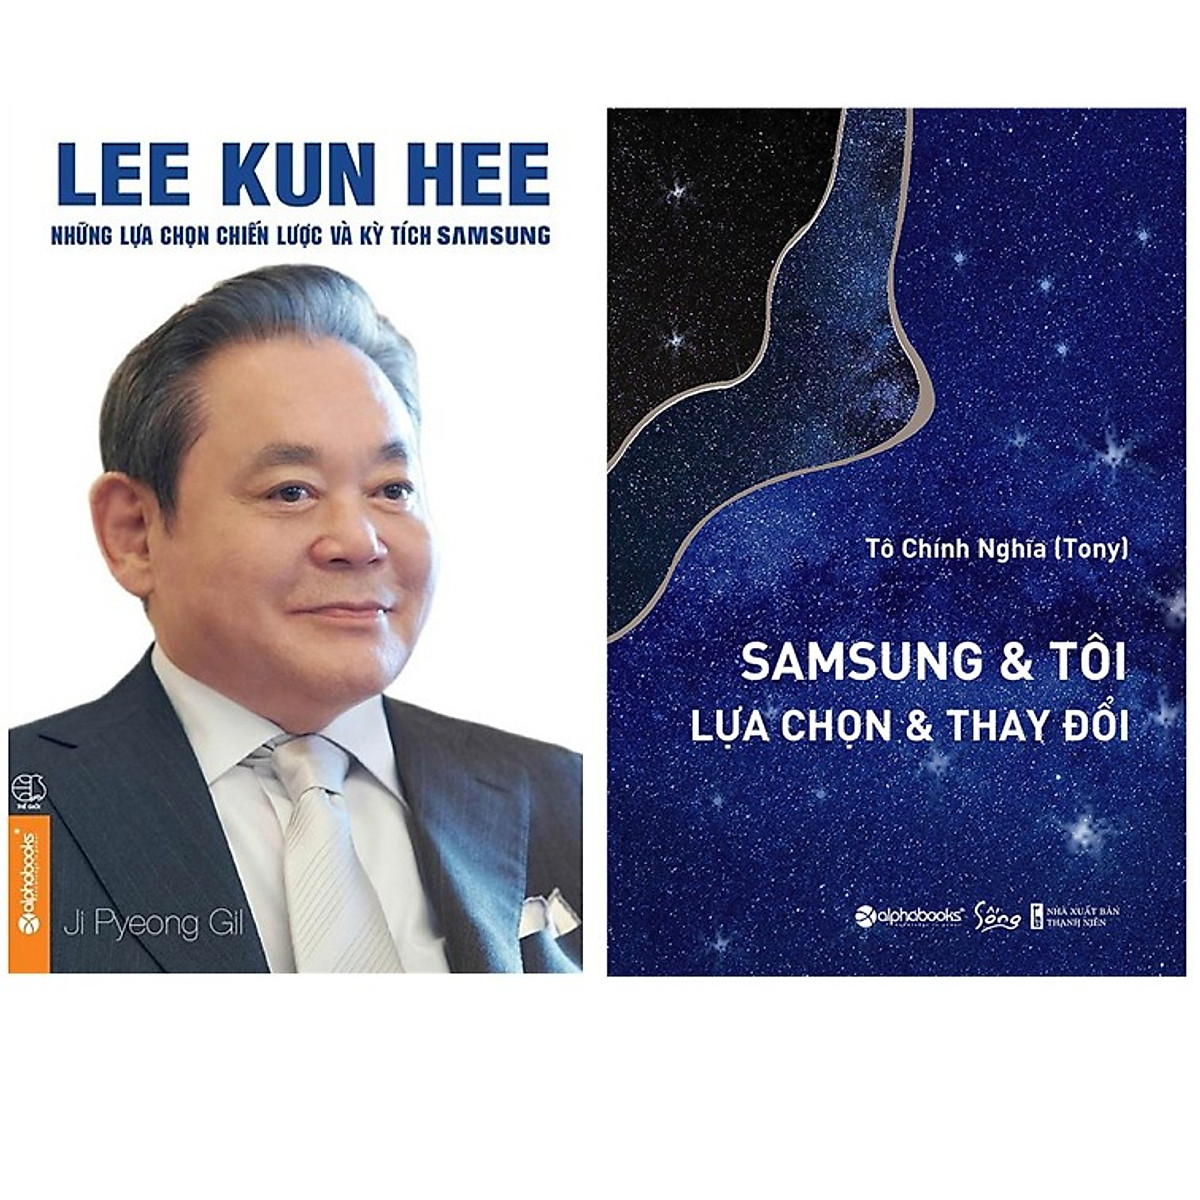 Combo Sách : Lee Kun Hee - Những Lựa Chọn Chiến Lược Và Kỳ Tích Samsung + SamSung & Tôi - Lựa Chọn & Thay Đổi